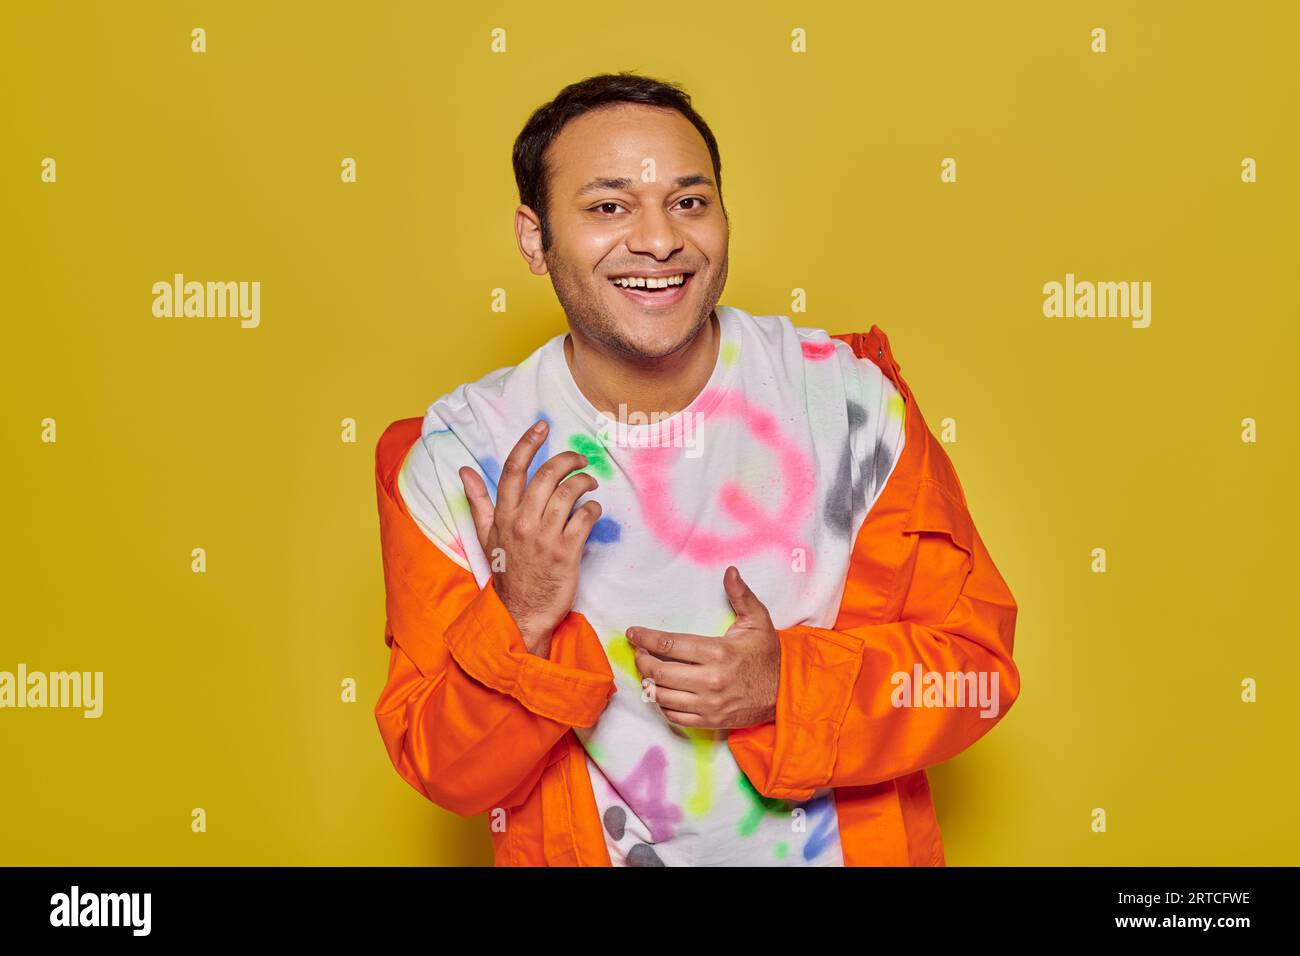 uomo indiano brillante con giacca arancione e t-shirt fai da te sorridendo e guardando la macchina fotografica su sfondo giallo Foto Stock